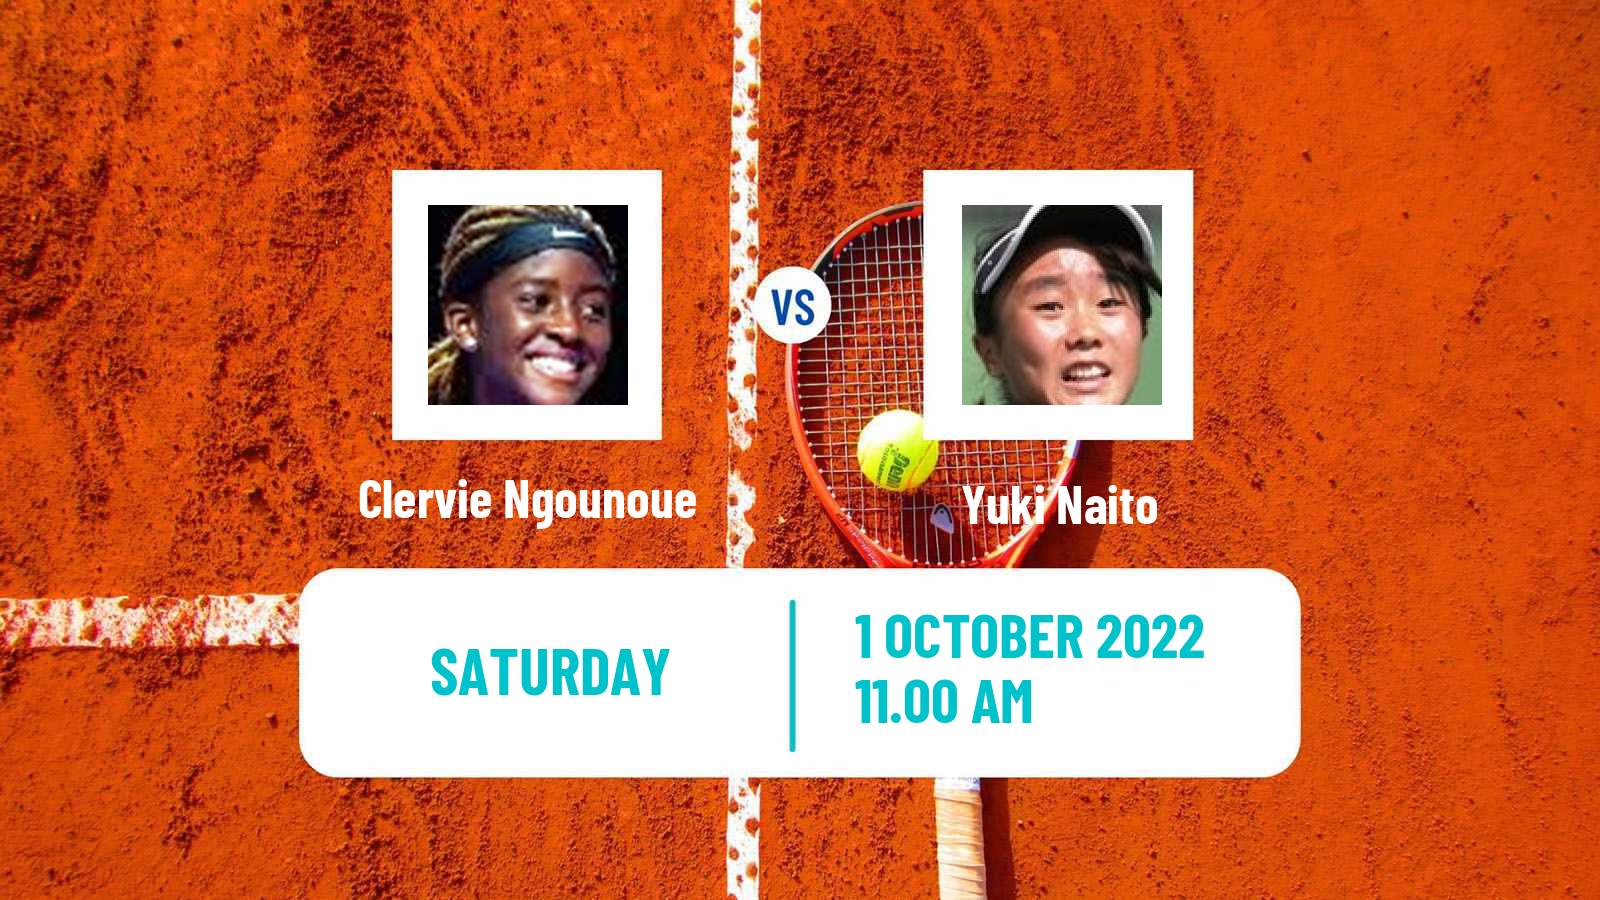 Tennis ITF Tournaments Clervie Ngounoue - Yuki Naito